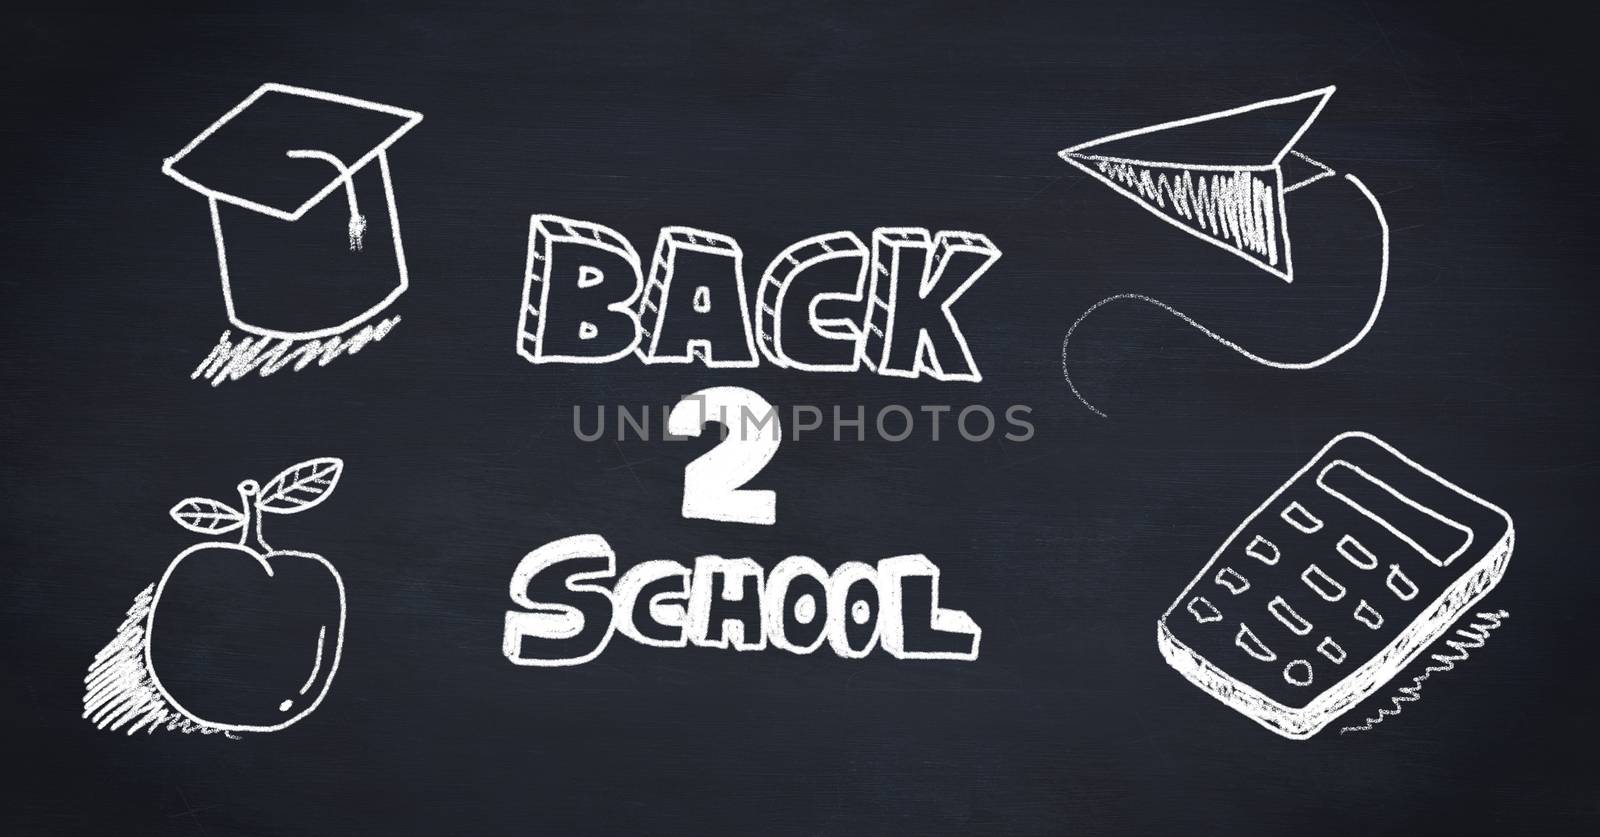 Back to School Education drawing on blackboard by Wavebreakmedia